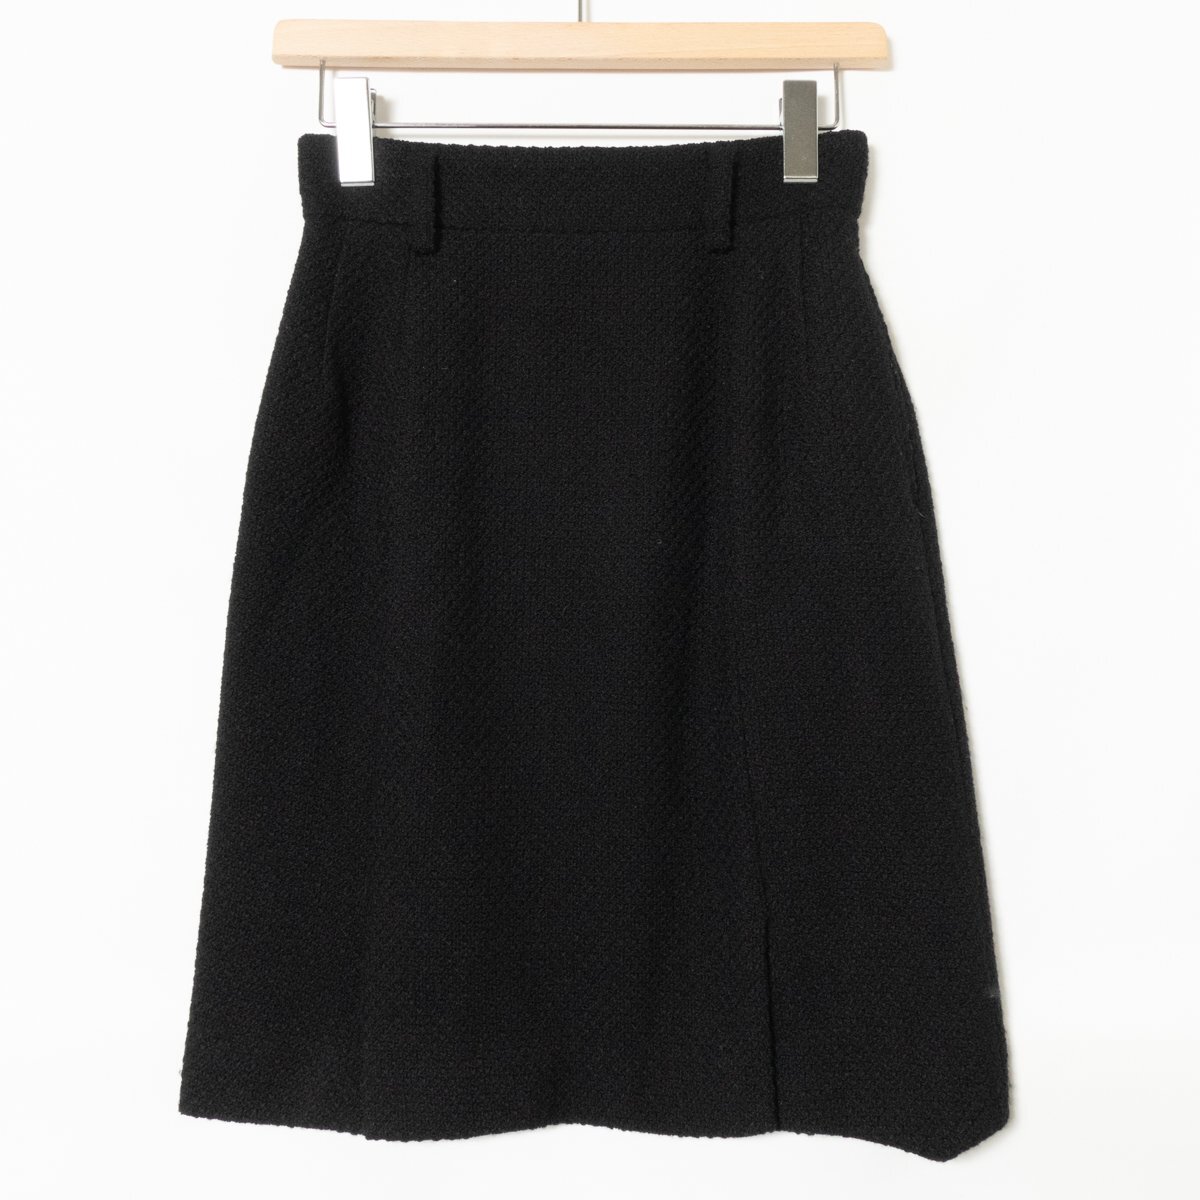 COMME CA DU MODE コムサデモード 金ボタンジャケット スカート 上着 ボトムス ウール100% ブラック 黒 綺麗め エレガンス フォーマルの画像4